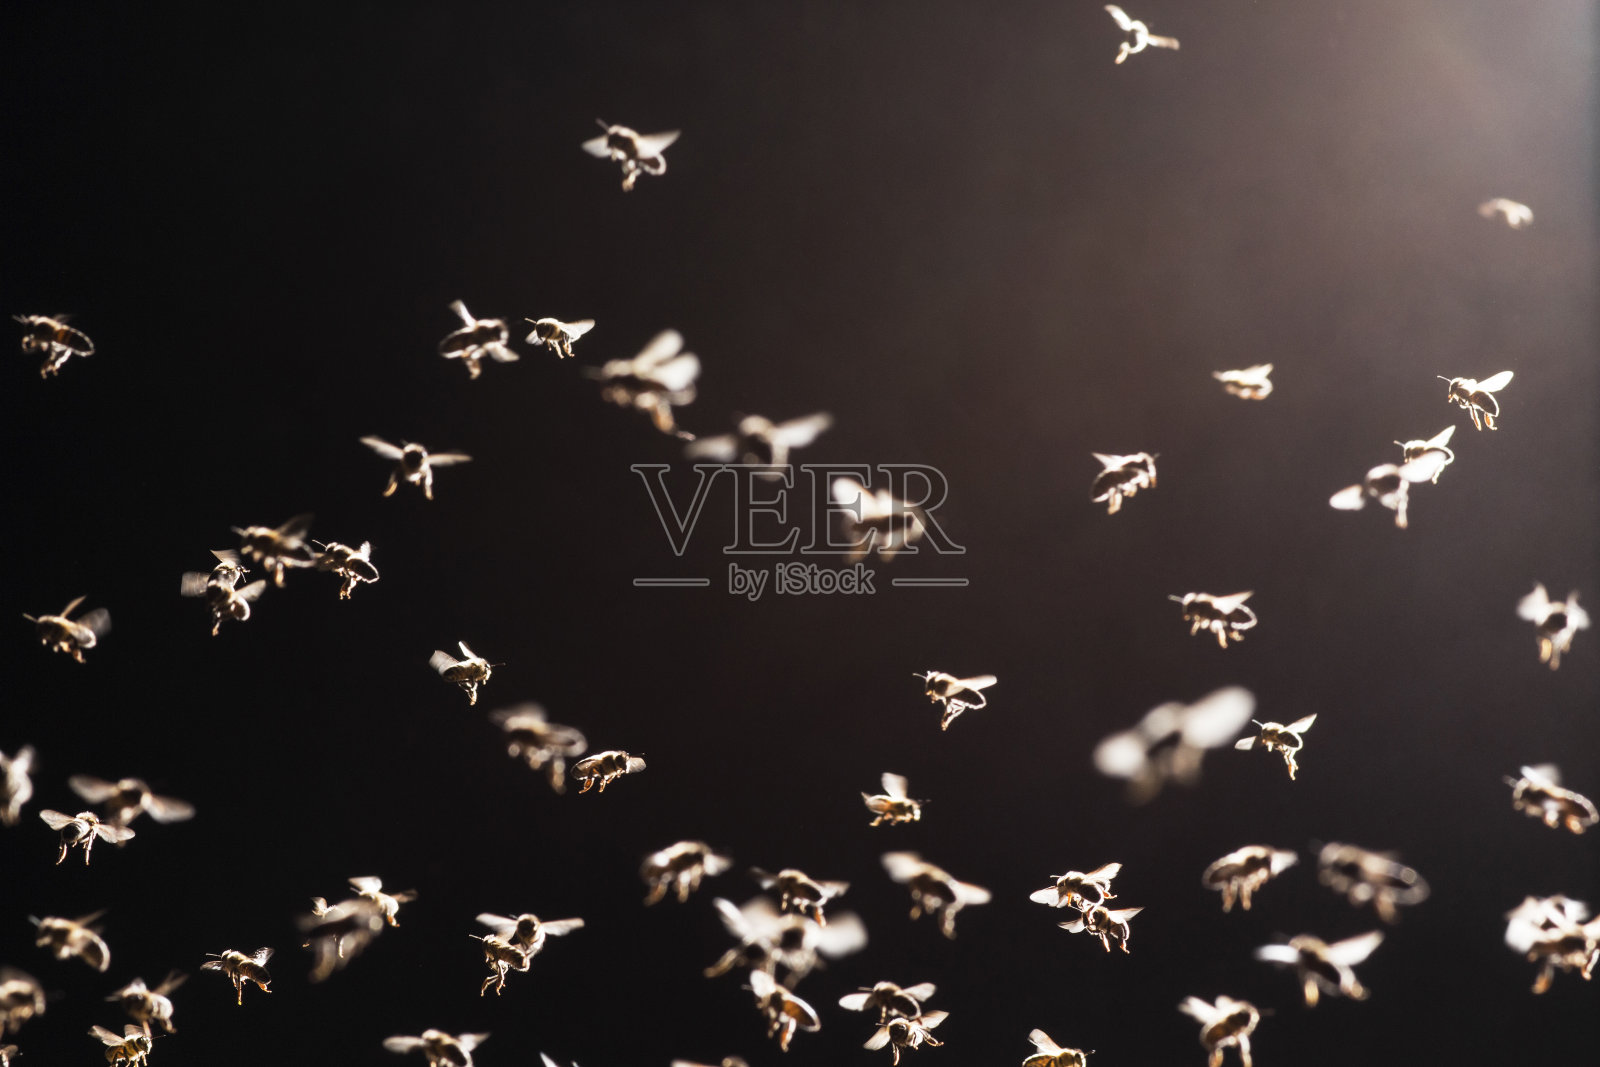 一群蜜蜂飞过公开的证据照片摄影图片